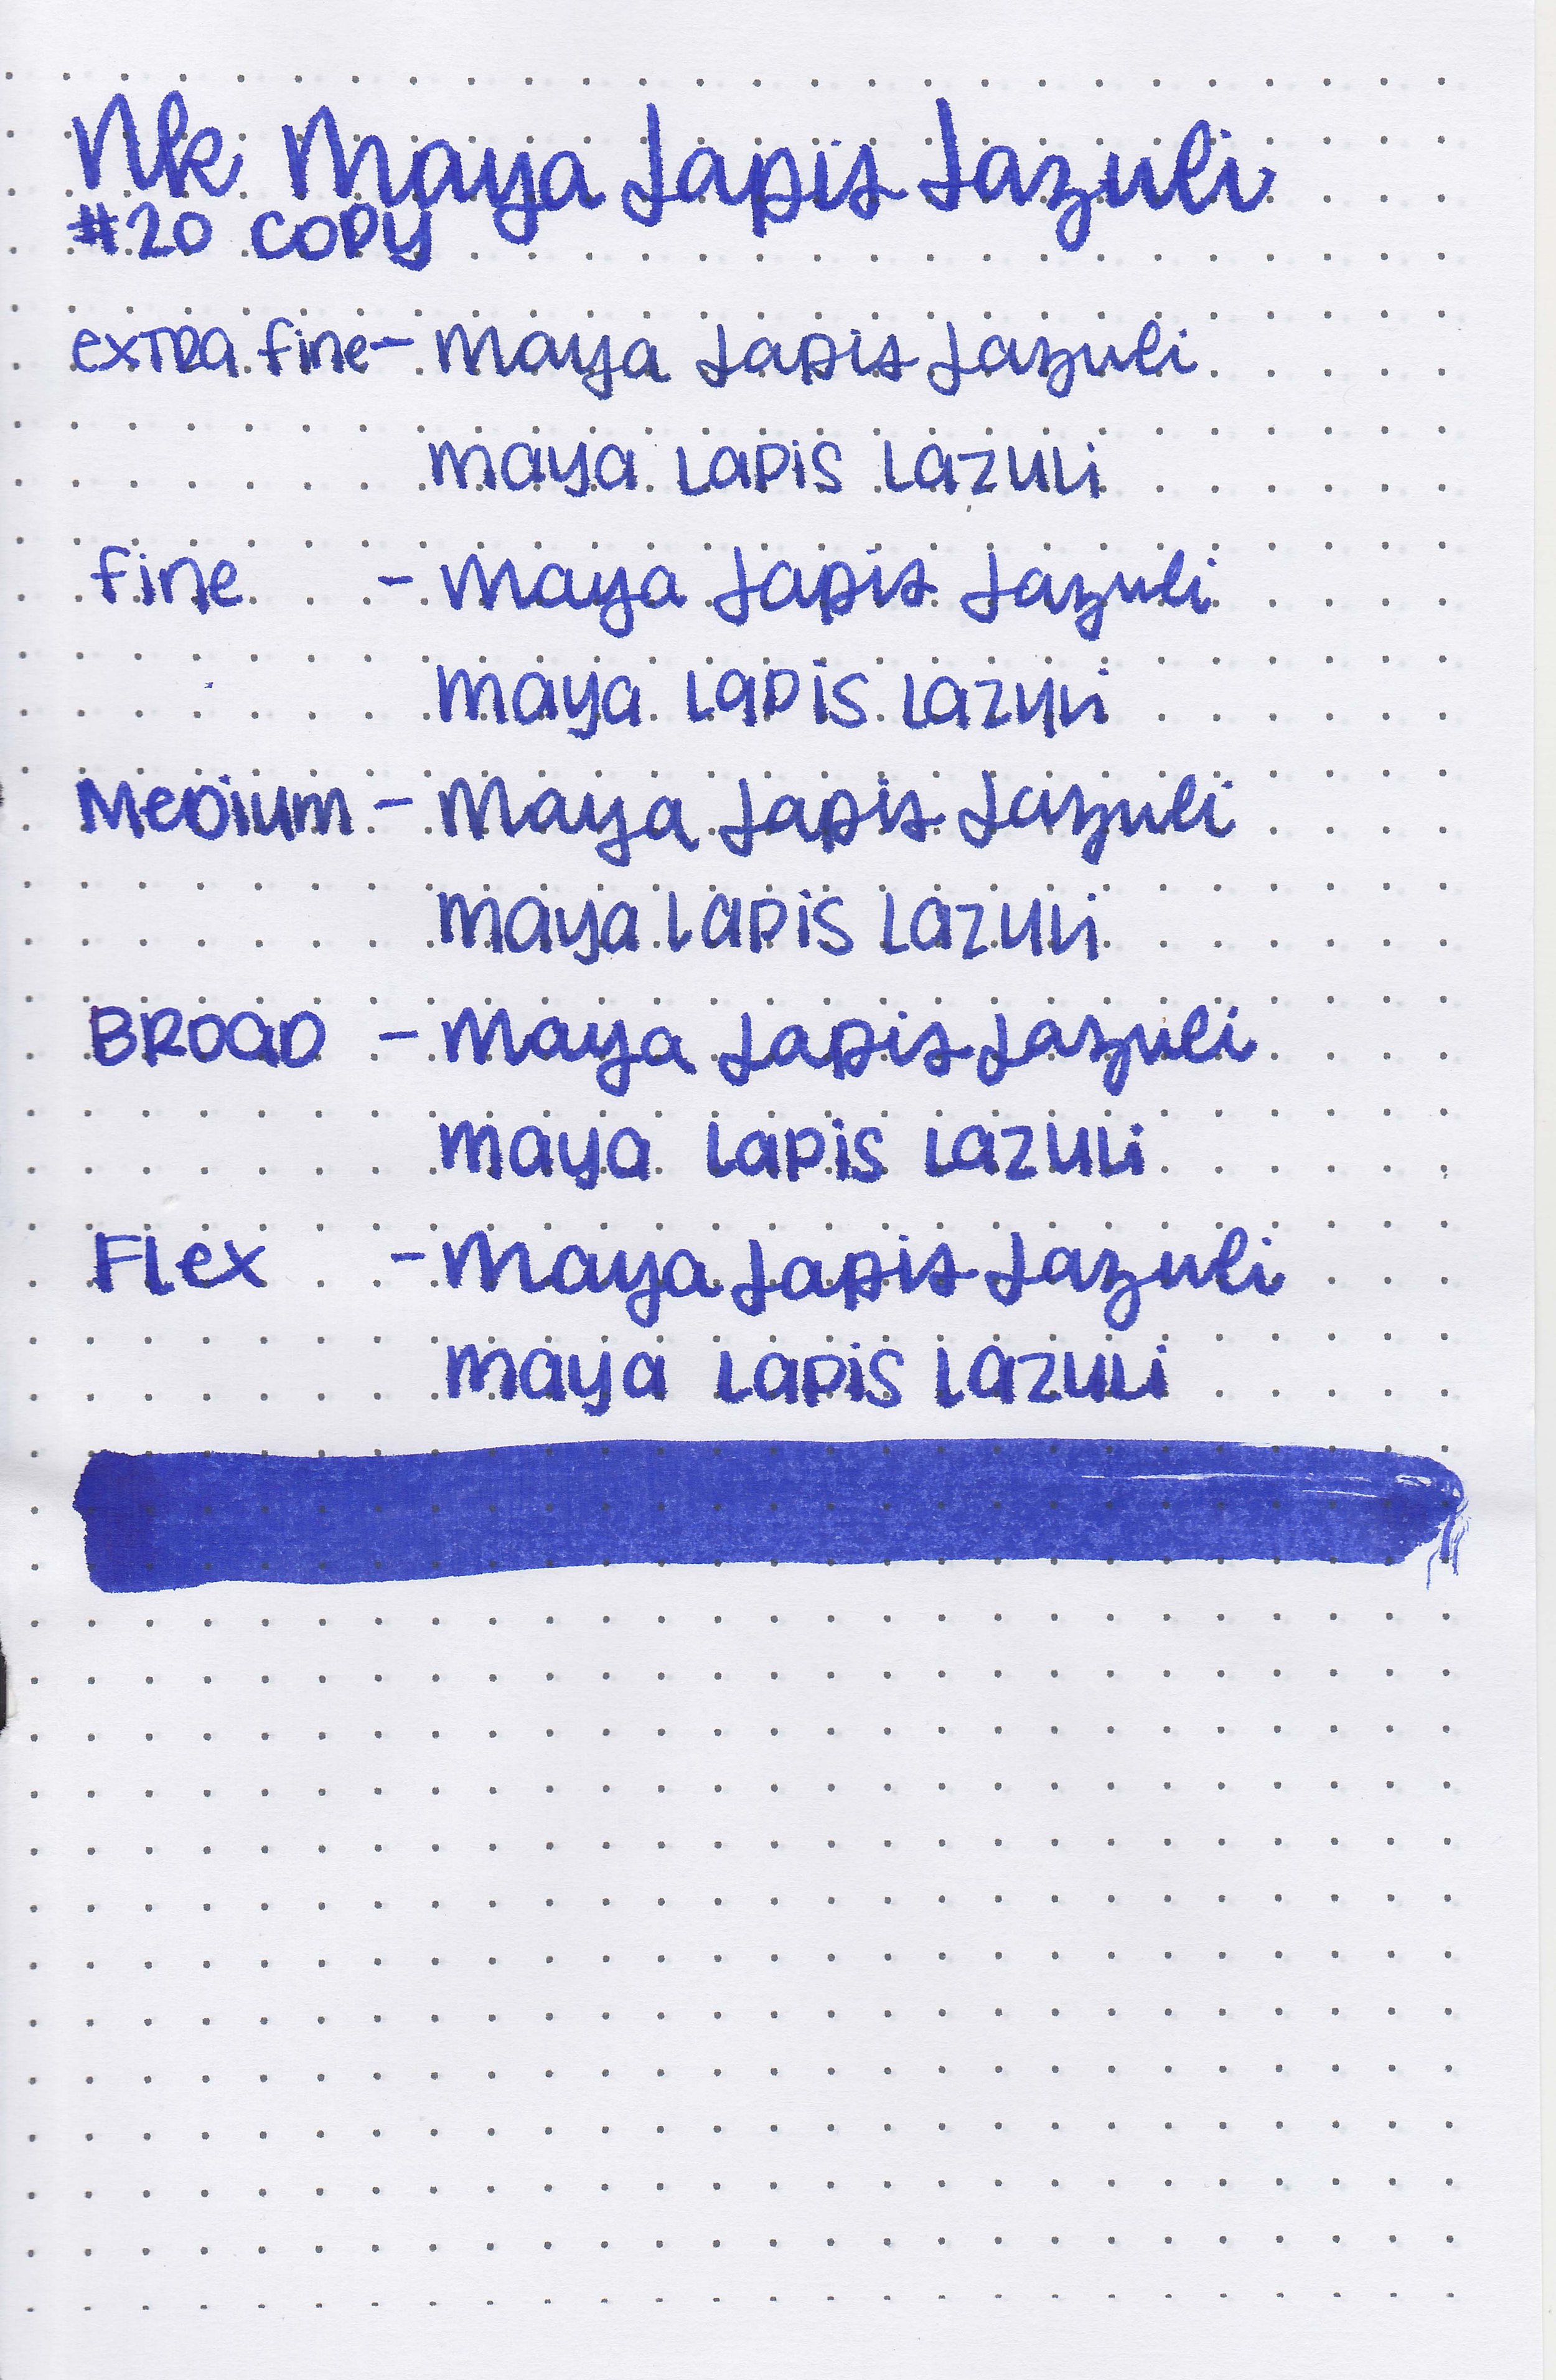 nk-maya-lapis-lazuli-10.jpg